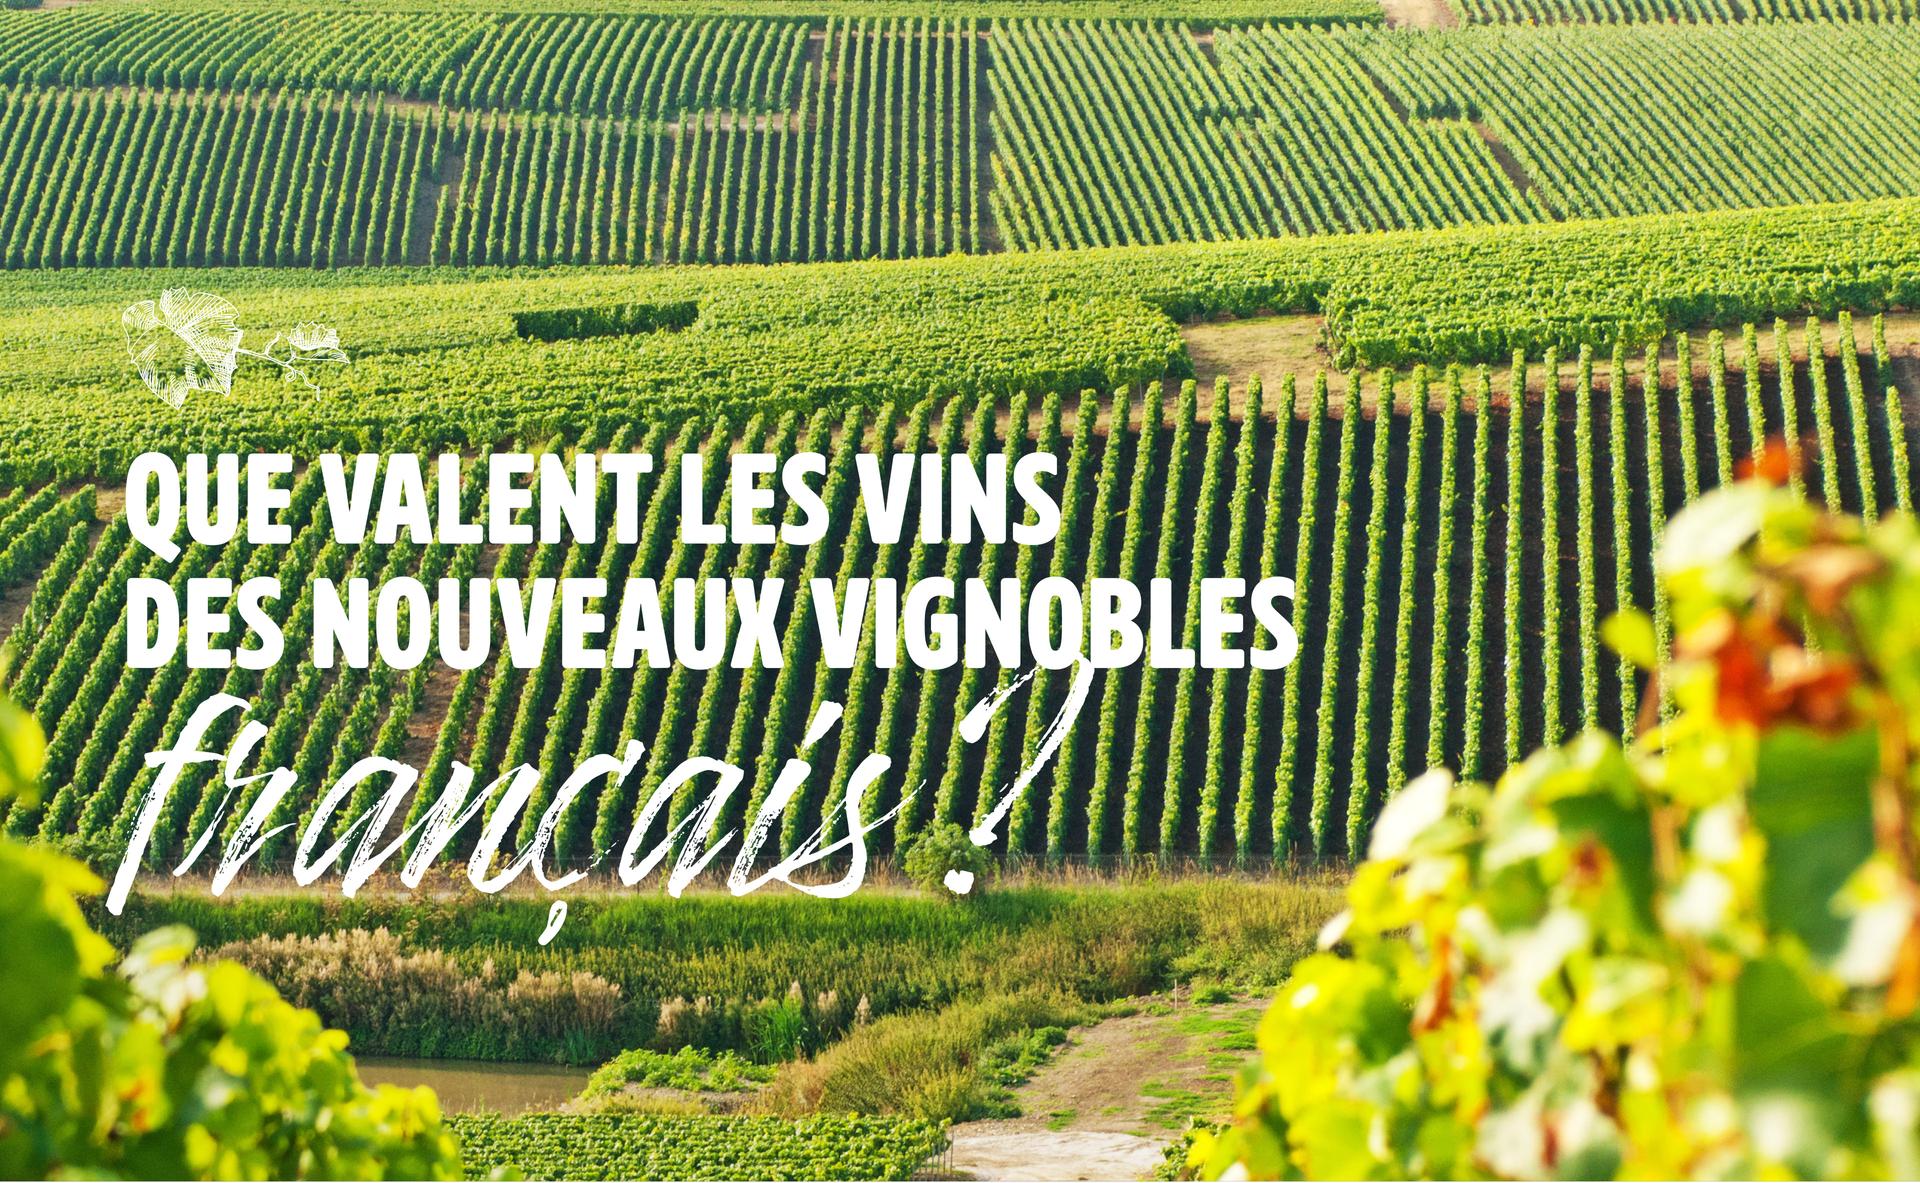 Que valent les vins des nouveaux vignobles français ?